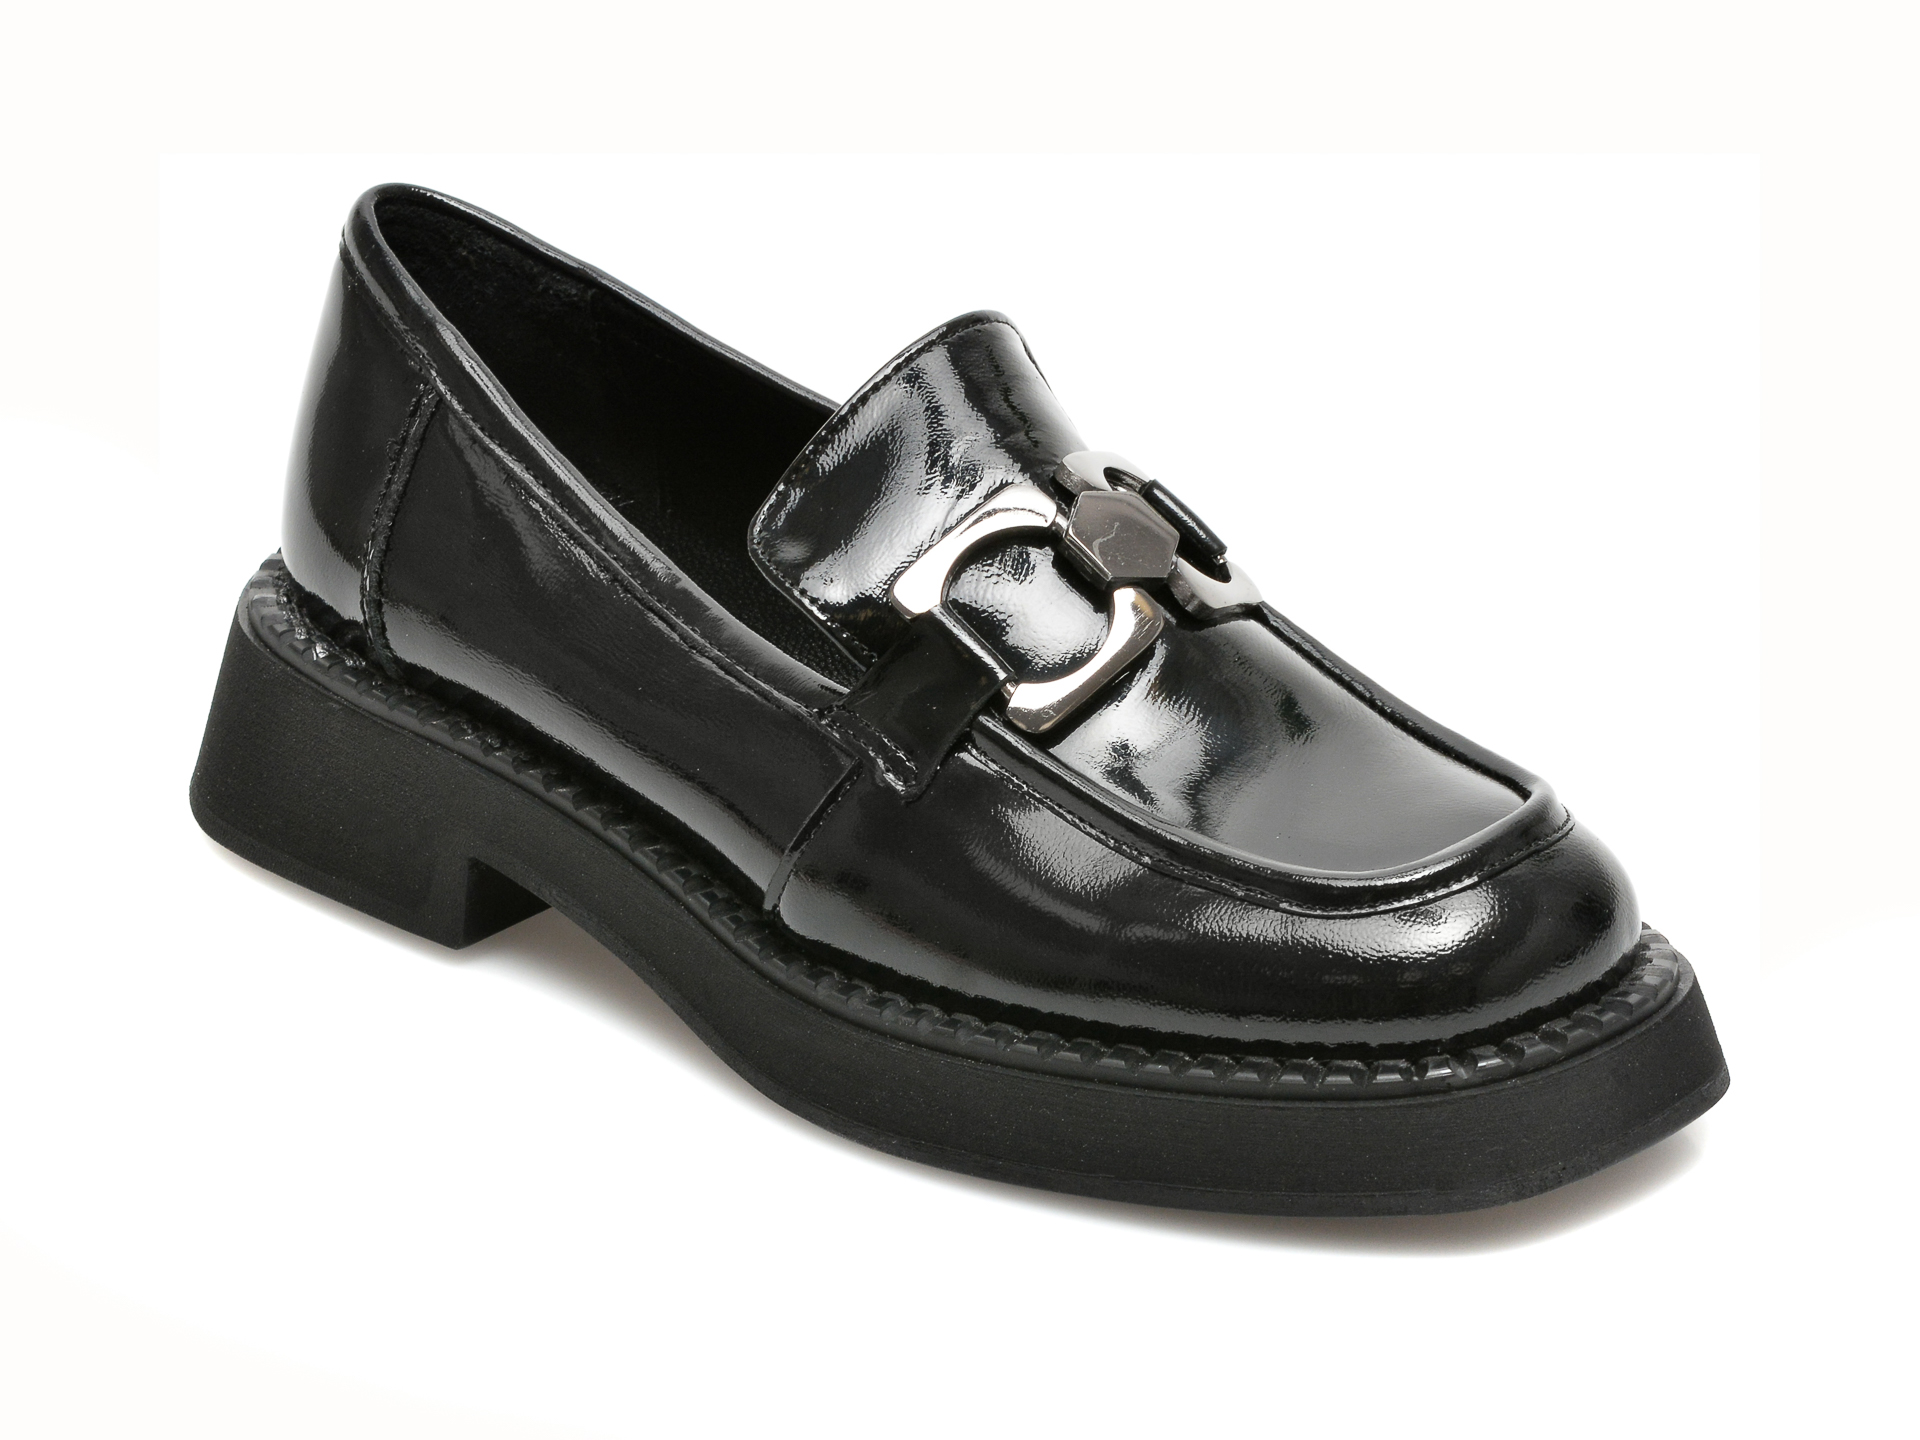 Pantofi FLAVIA PASSINI negri, 21784, din piele naturala lacuita Flavia Passini